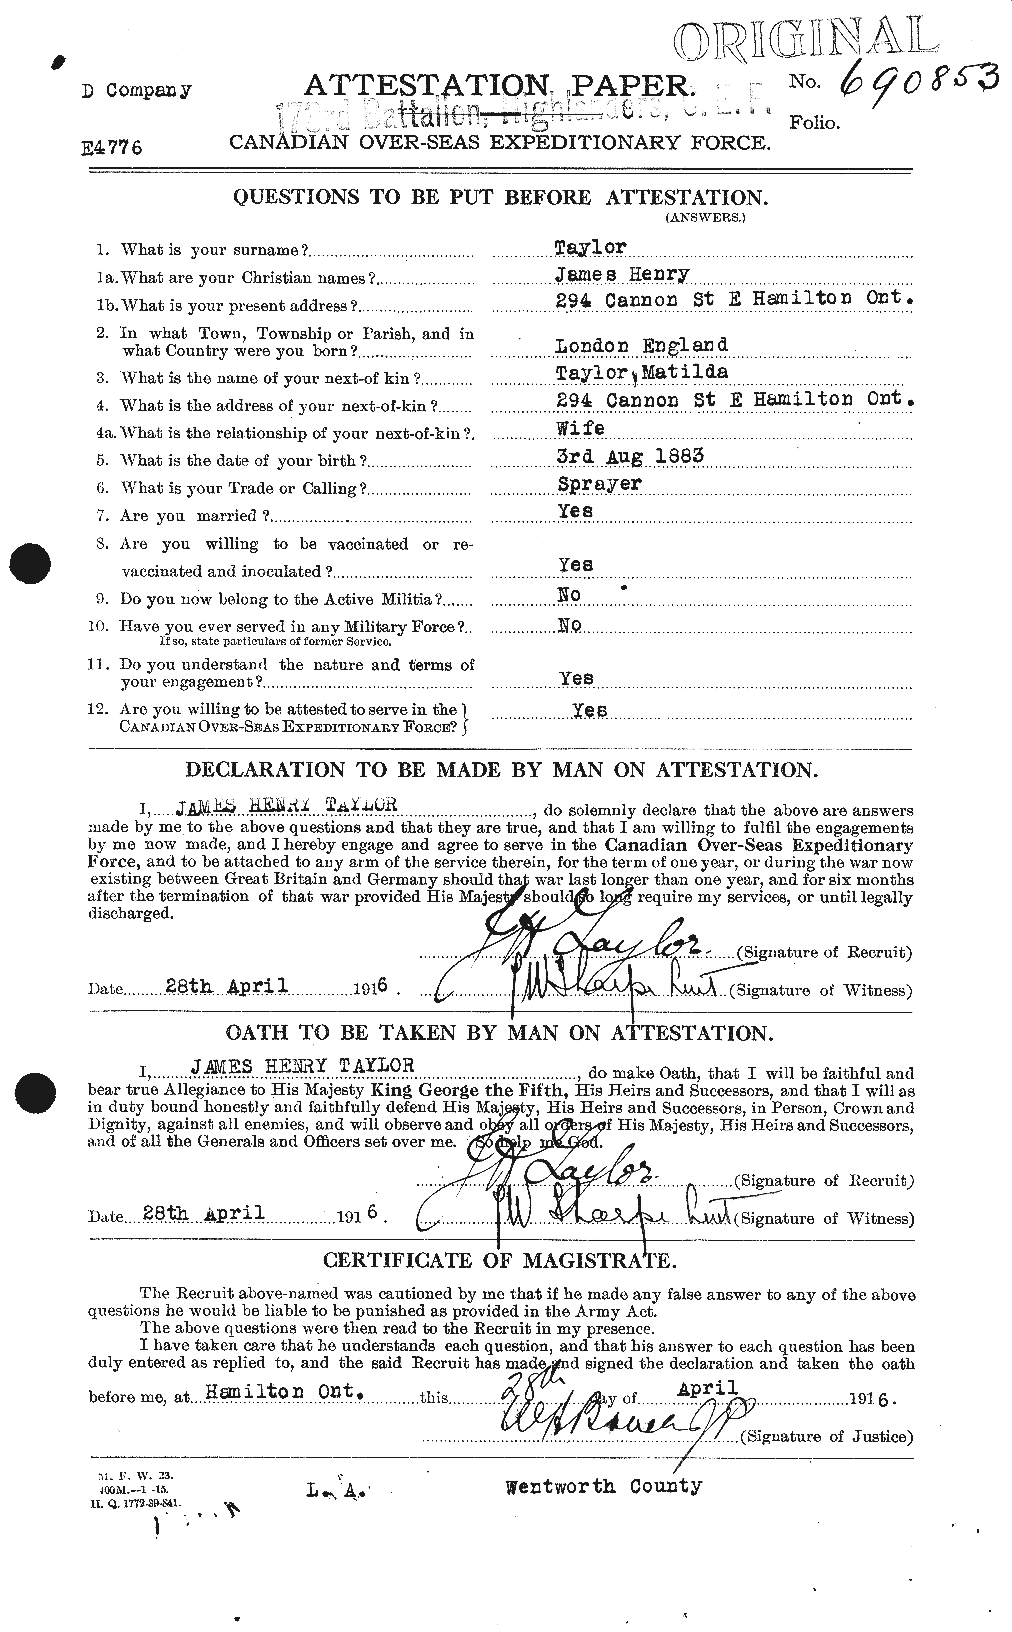 Dossiers du Personnel de la Première Guerre mondiale - CEC 626928a